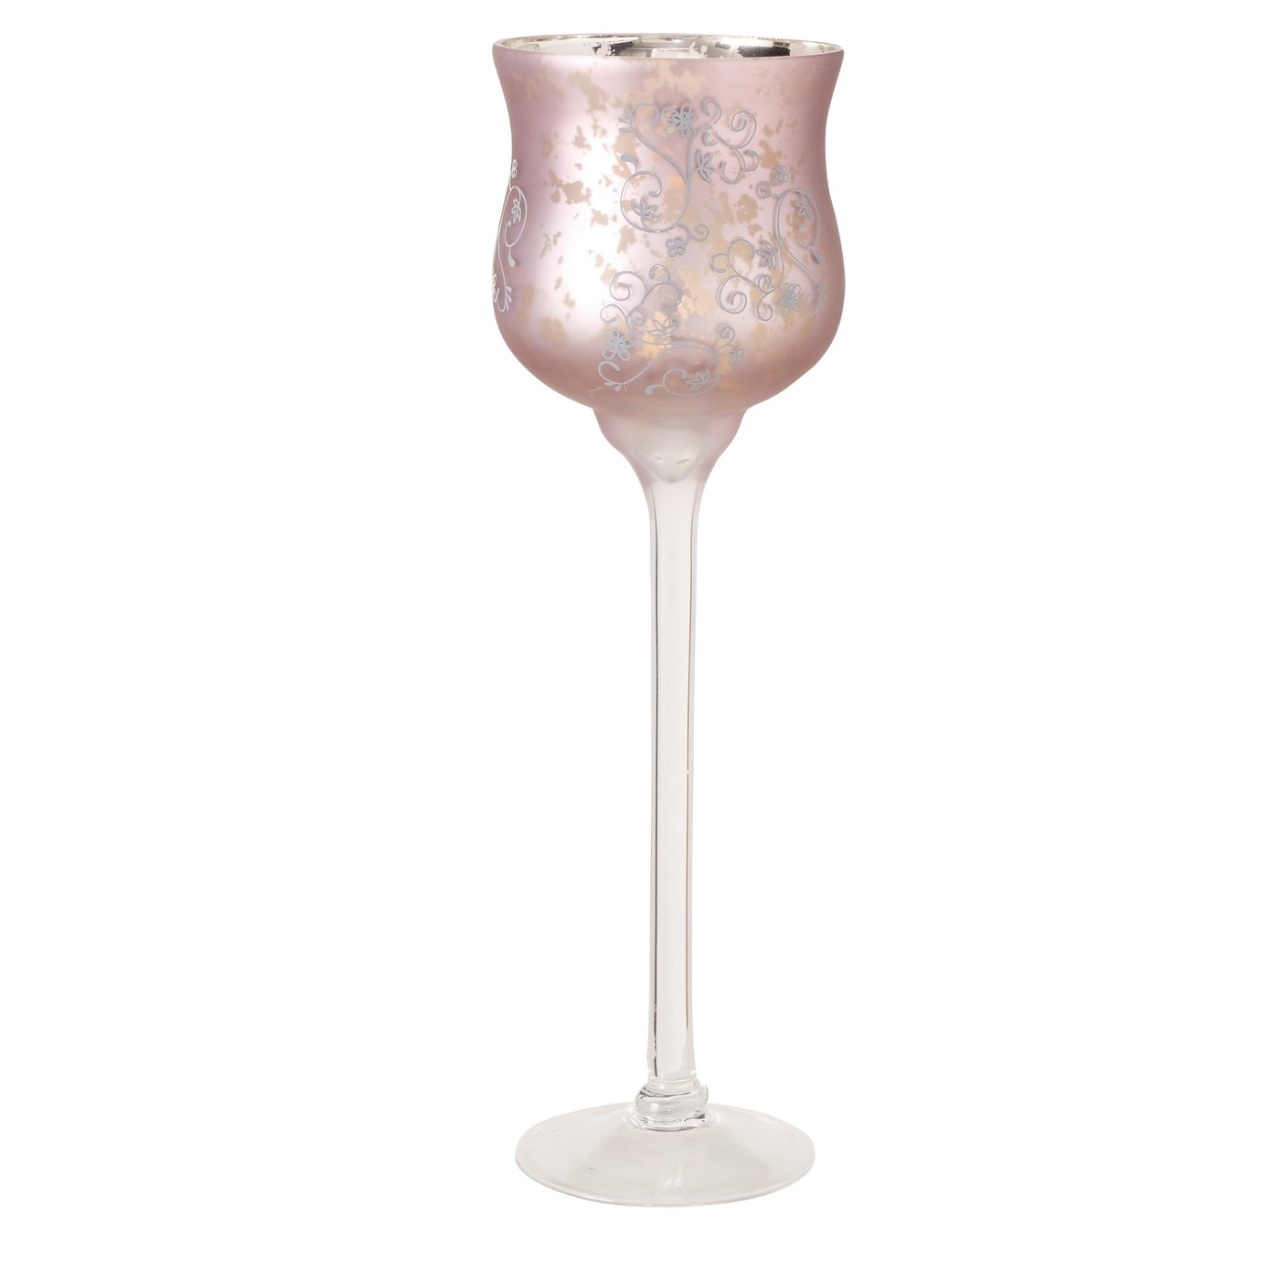 Windlicht Kelch  Manou, Glas, dunkelrosa, H 40 cm